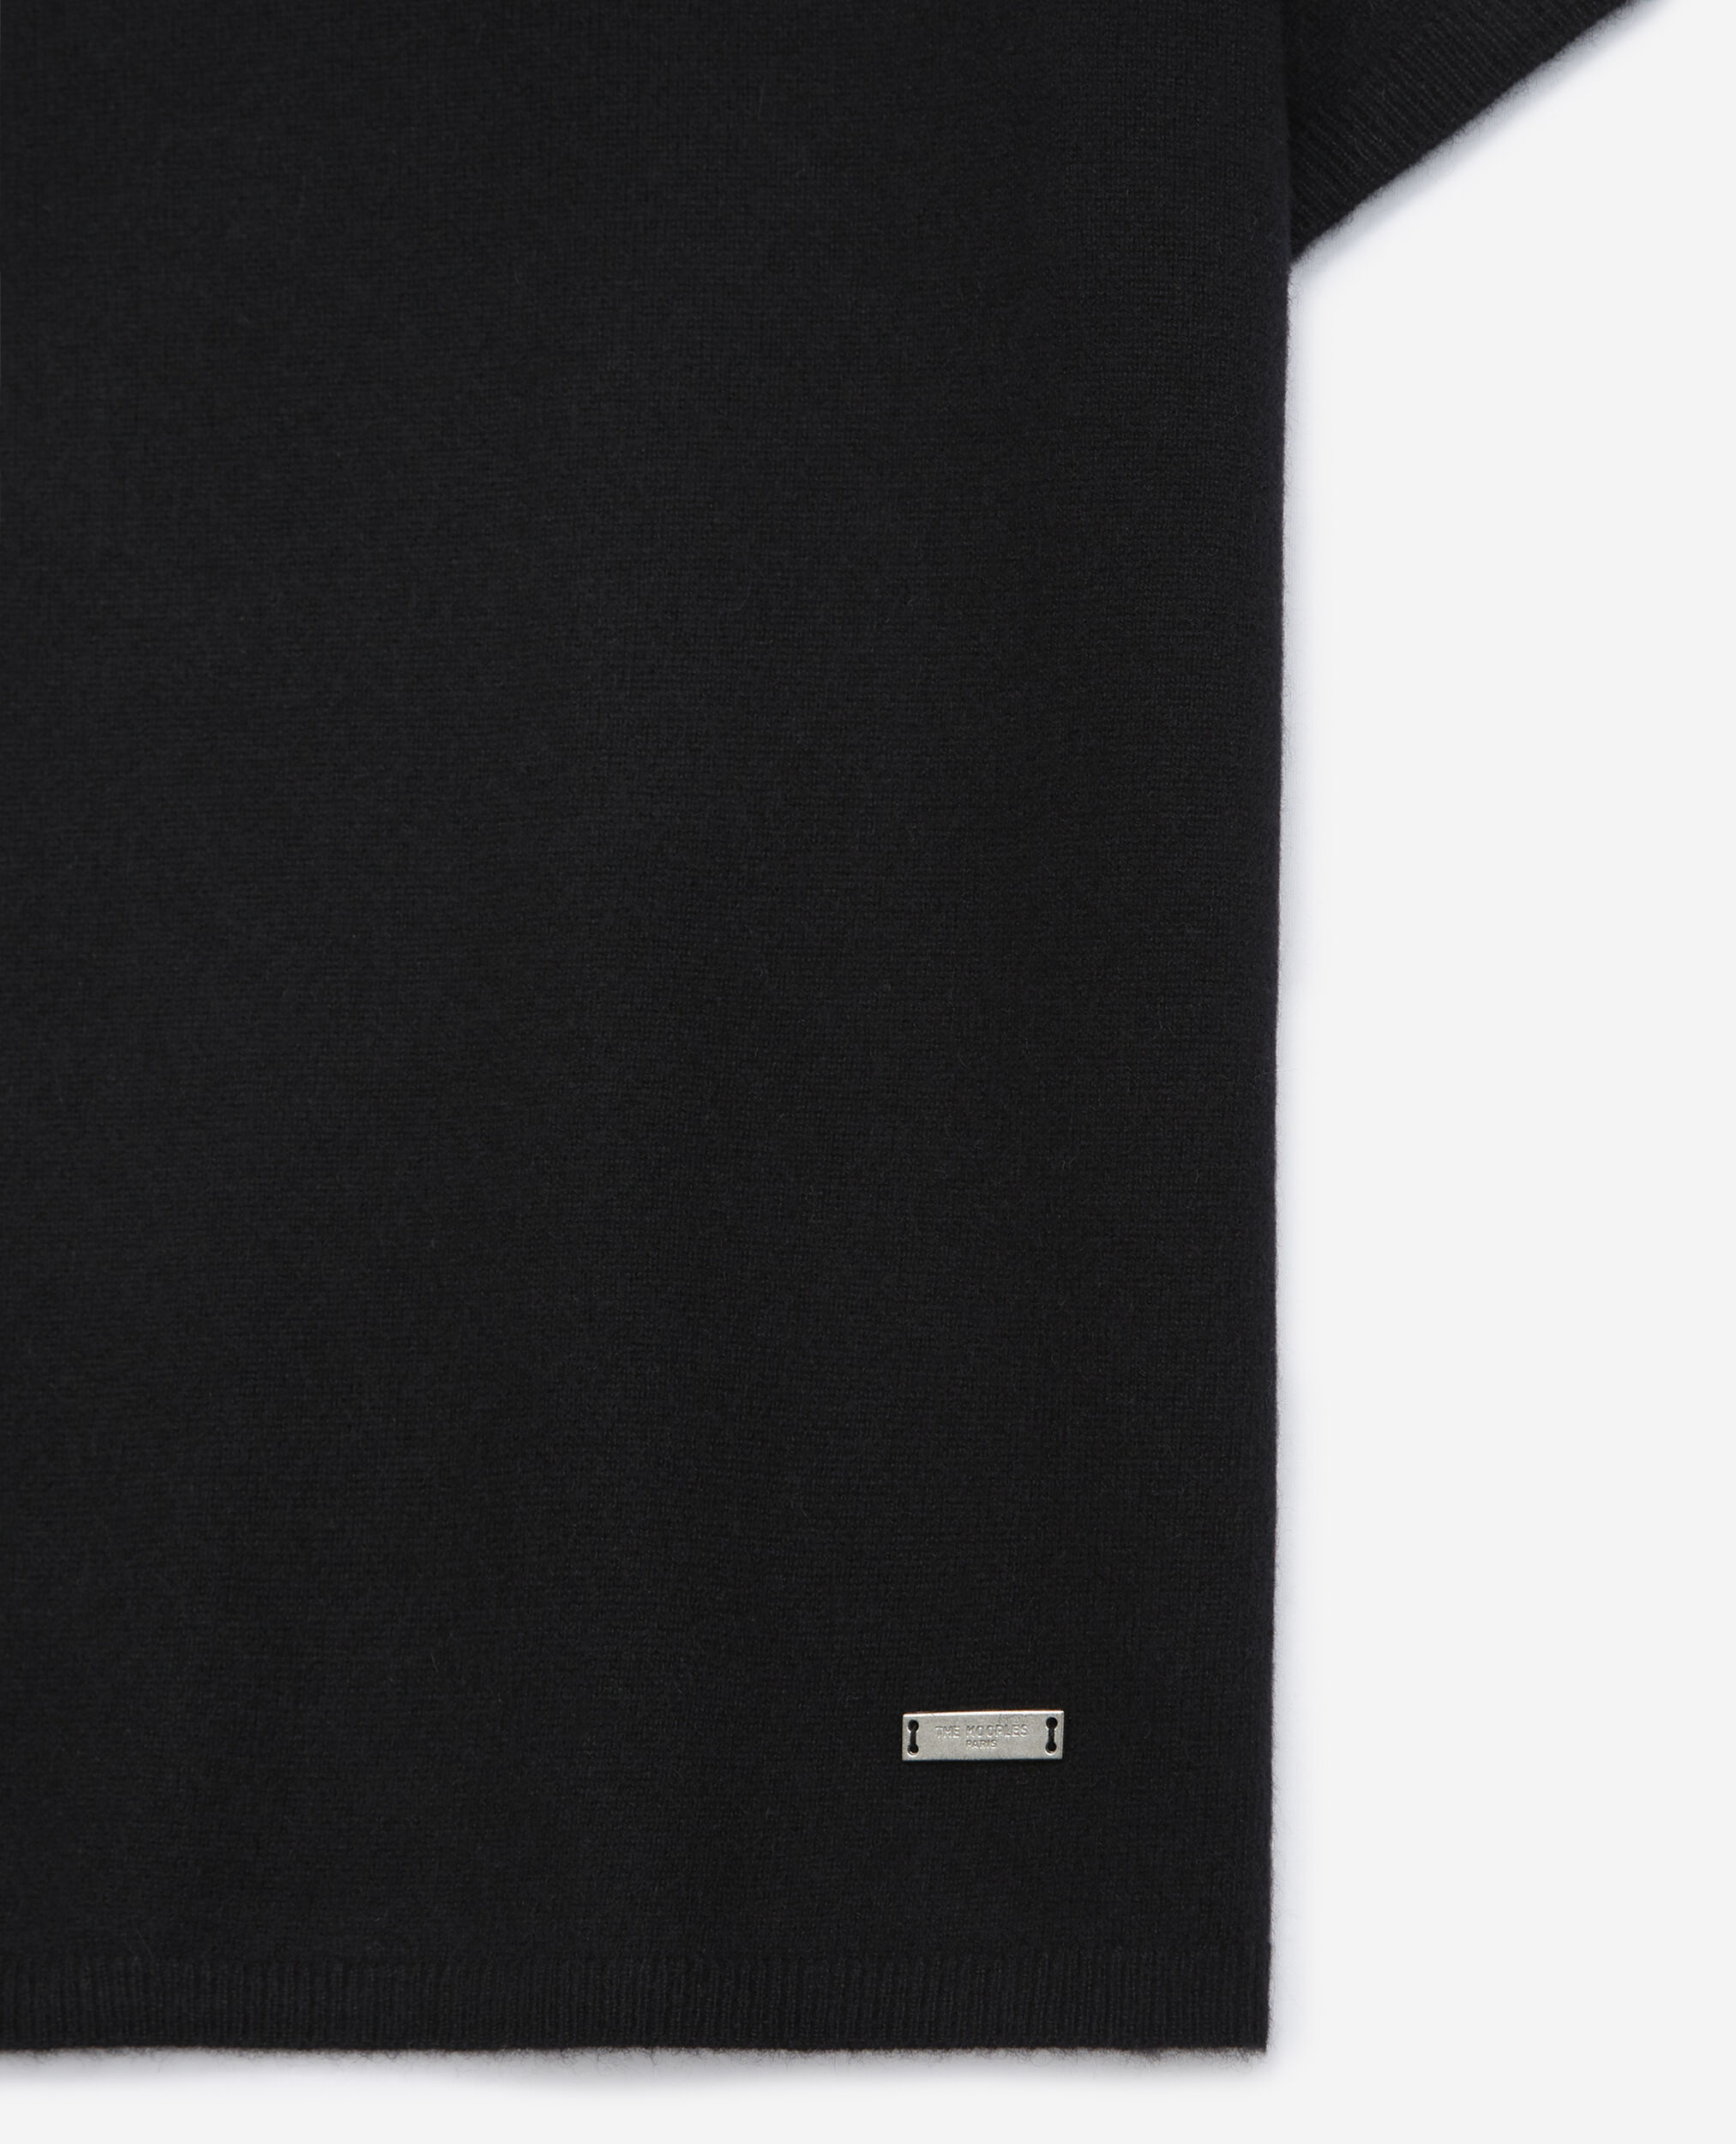 Jersey cachemira negro manga corta, BLACK, hi-res image number null